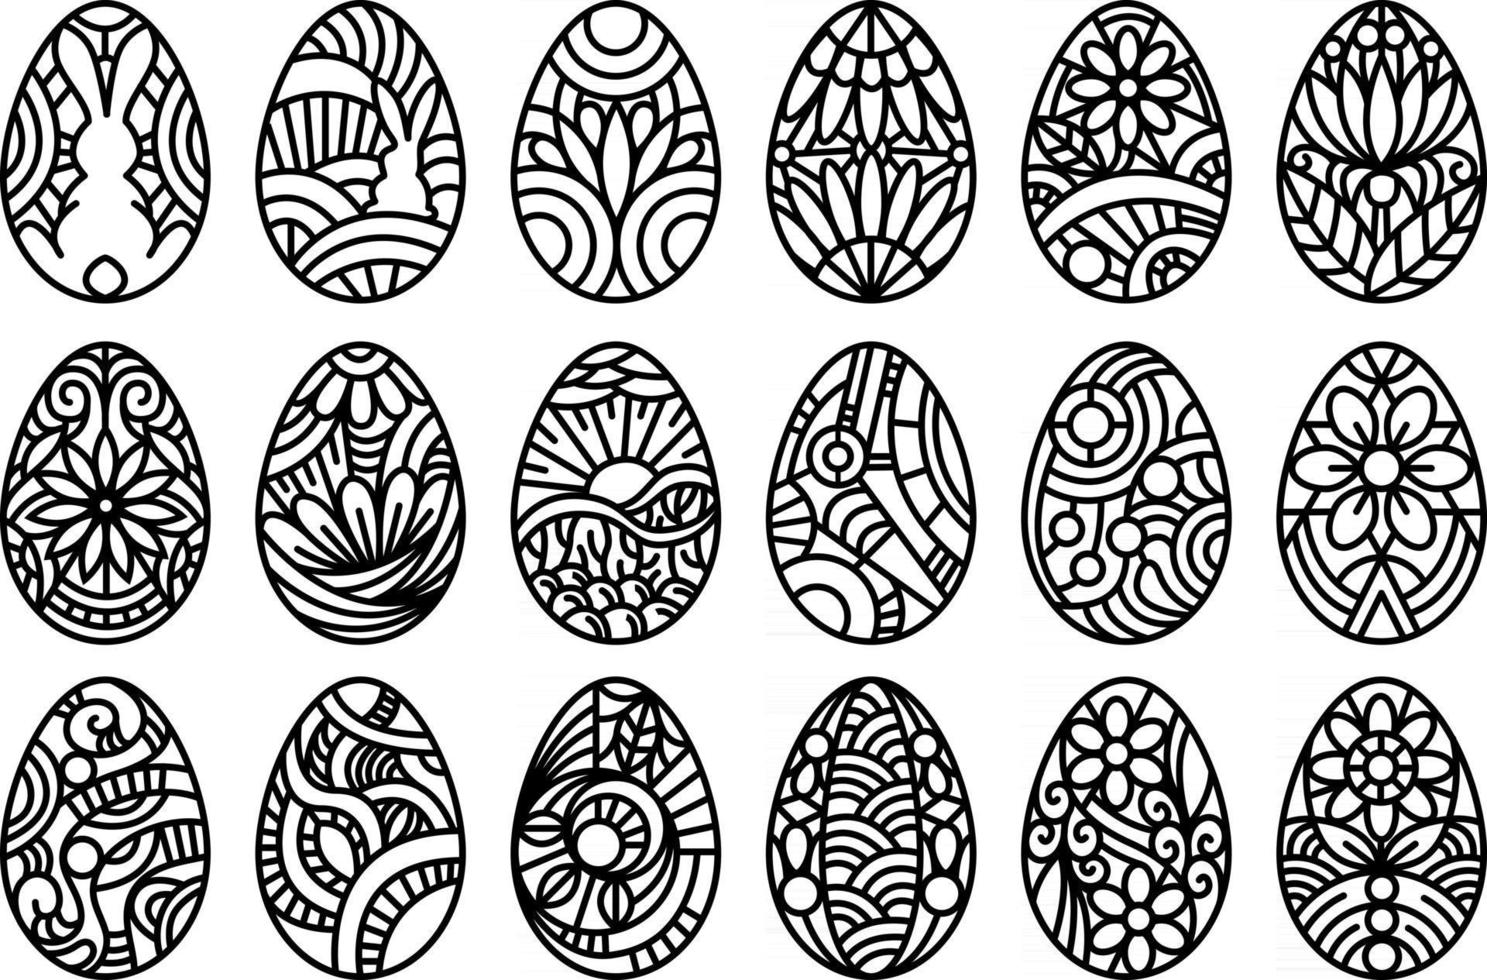 insieme dell'illustrazione delle uova di Pasqua. collezione di uova decorate e decorate con fiori, conigli e forme astratte. set di uova decorative di pasqua vettore